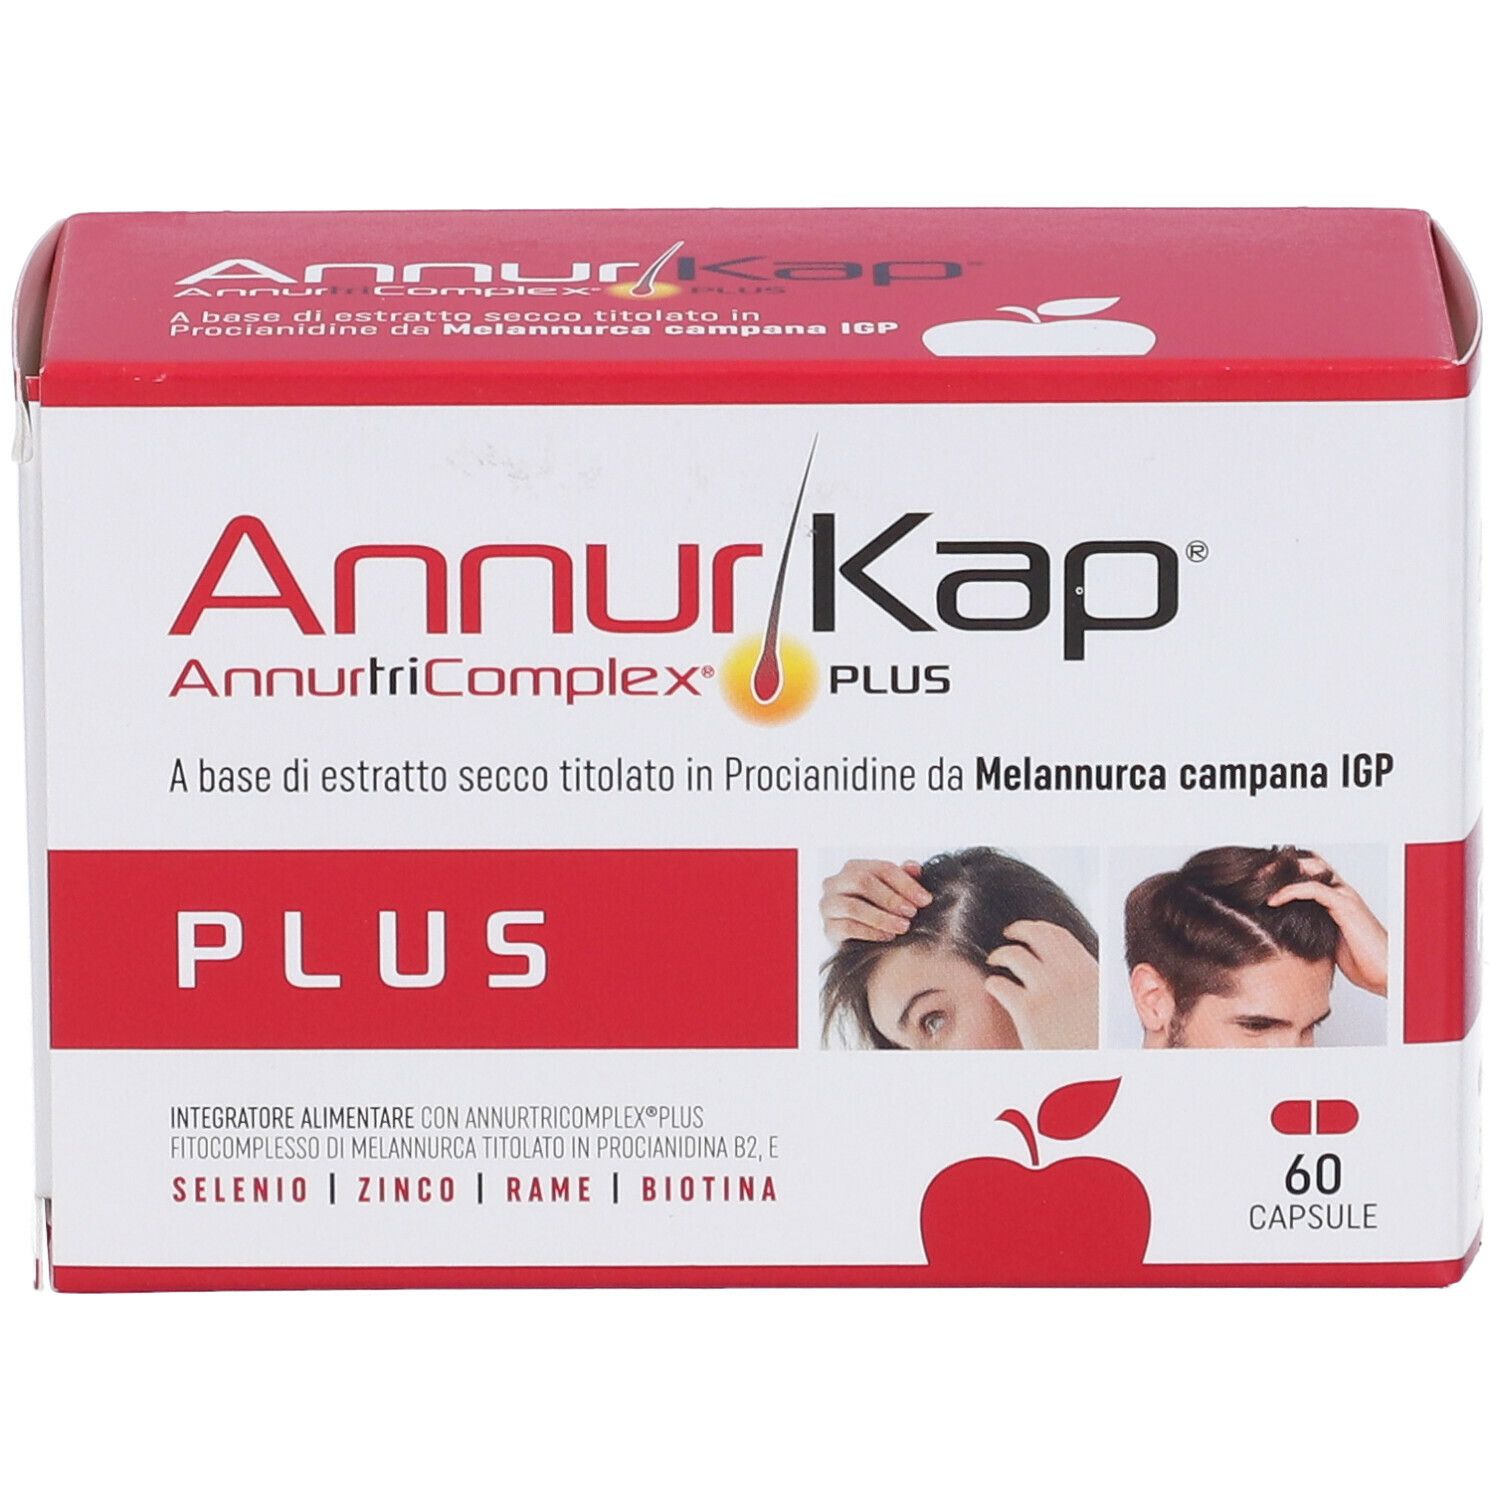 AnnurKap™